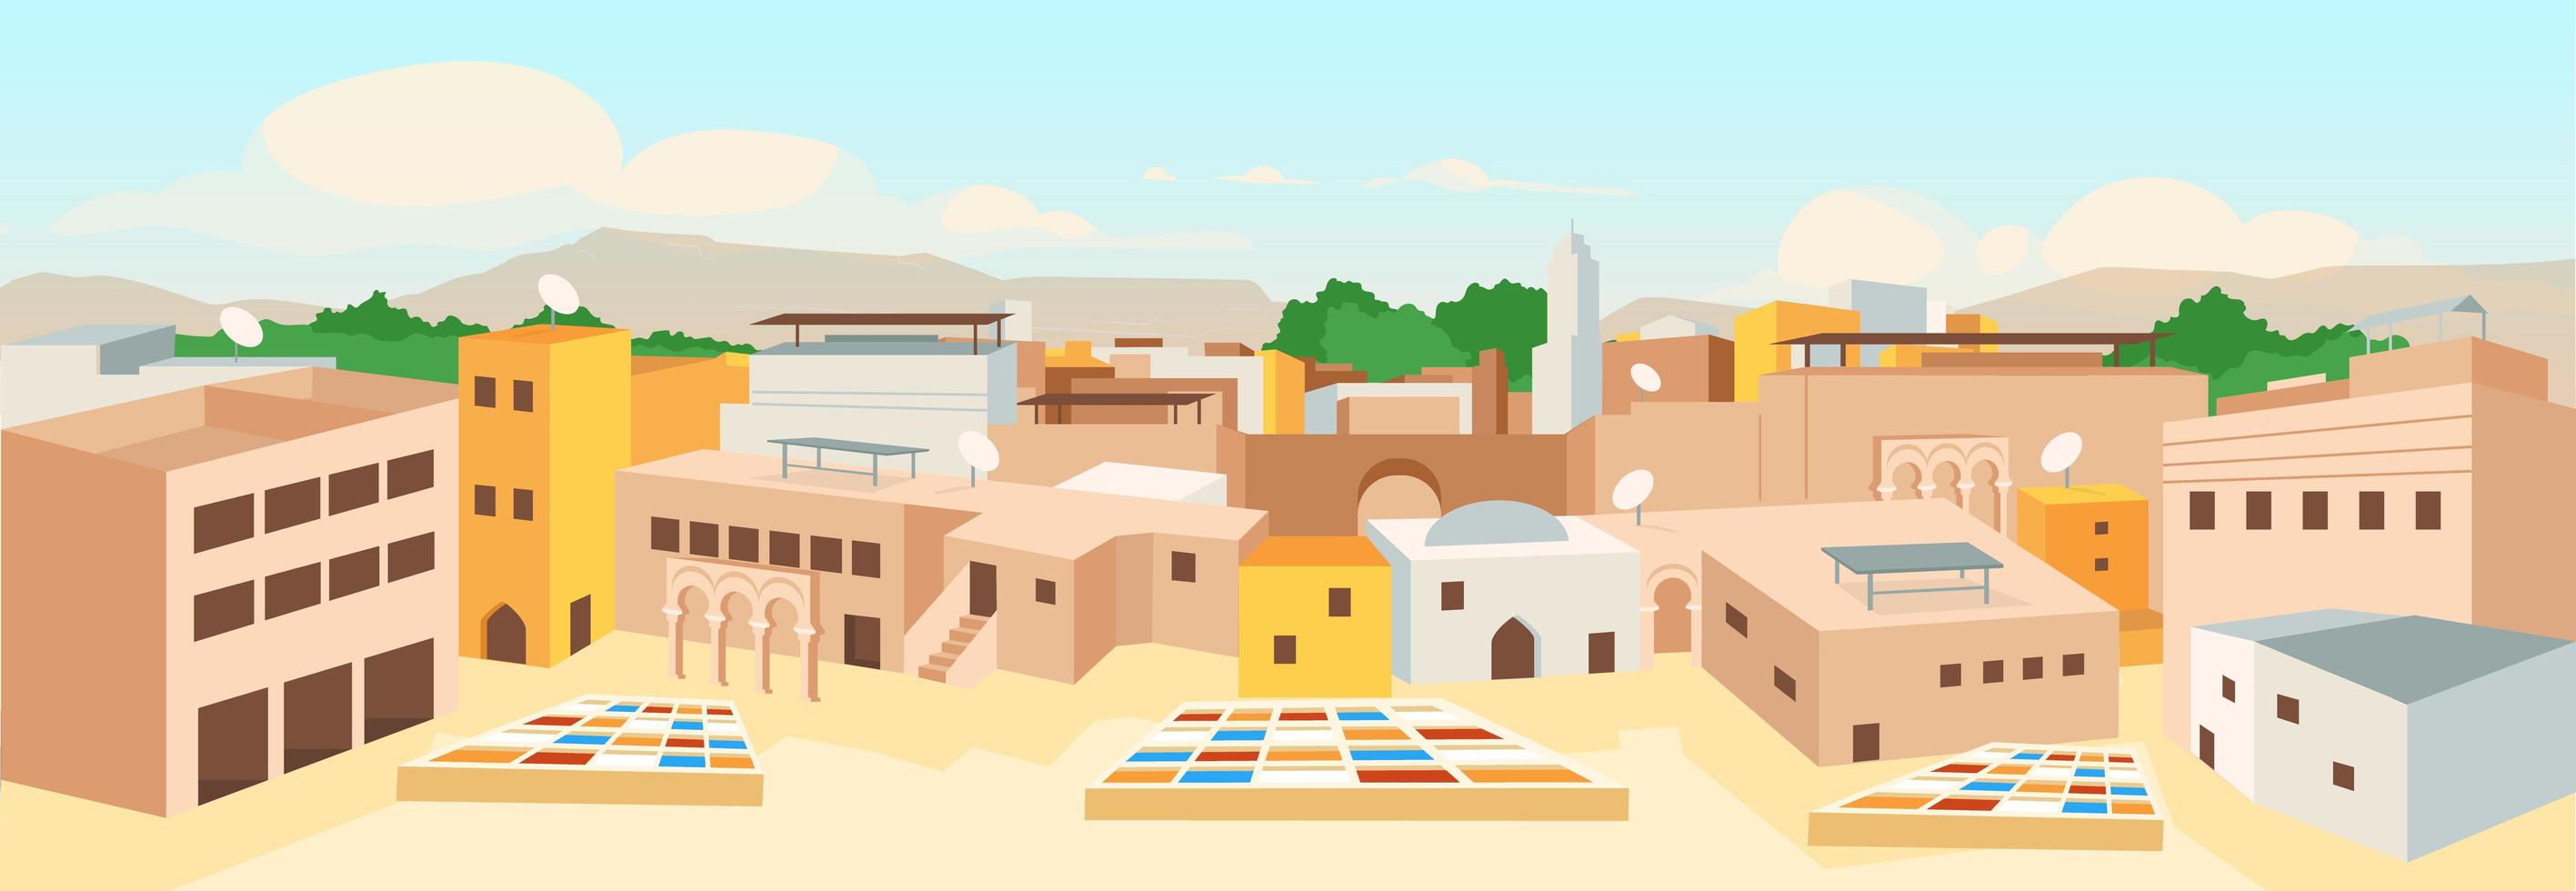 oude Arabische stad egale kleur vectorillustratie vector